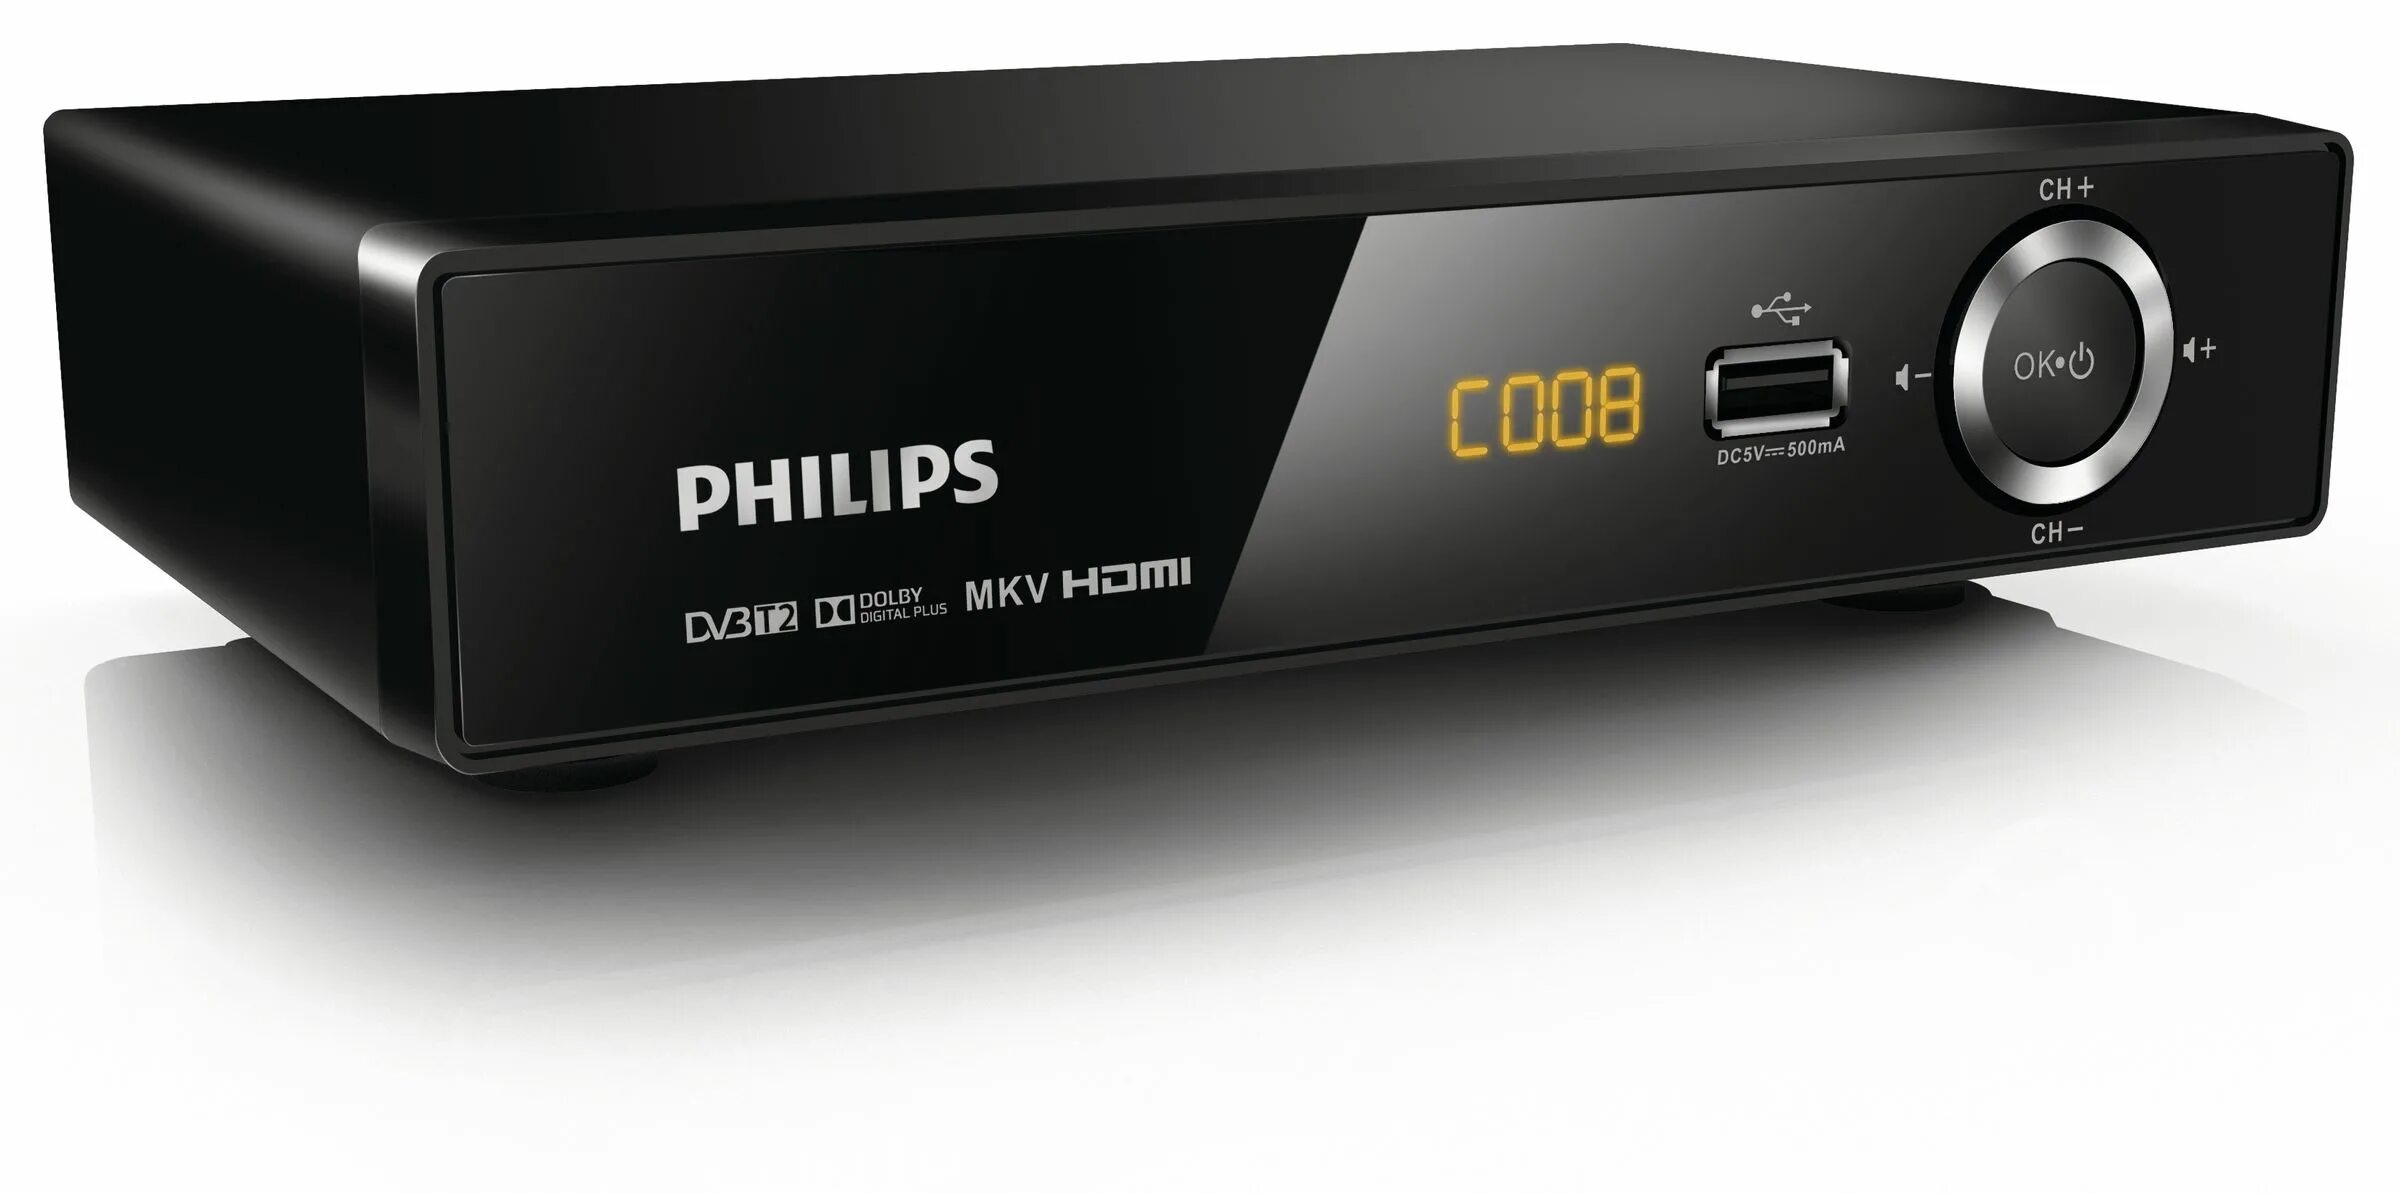 Приставка 1 канал. Медиаплеер Philips hmp2500t. Медиаплеер Philips hmp2500t 12. DVB-t2 приставка Philips hmp2500. Ресивер DVB-t2 Филипс.